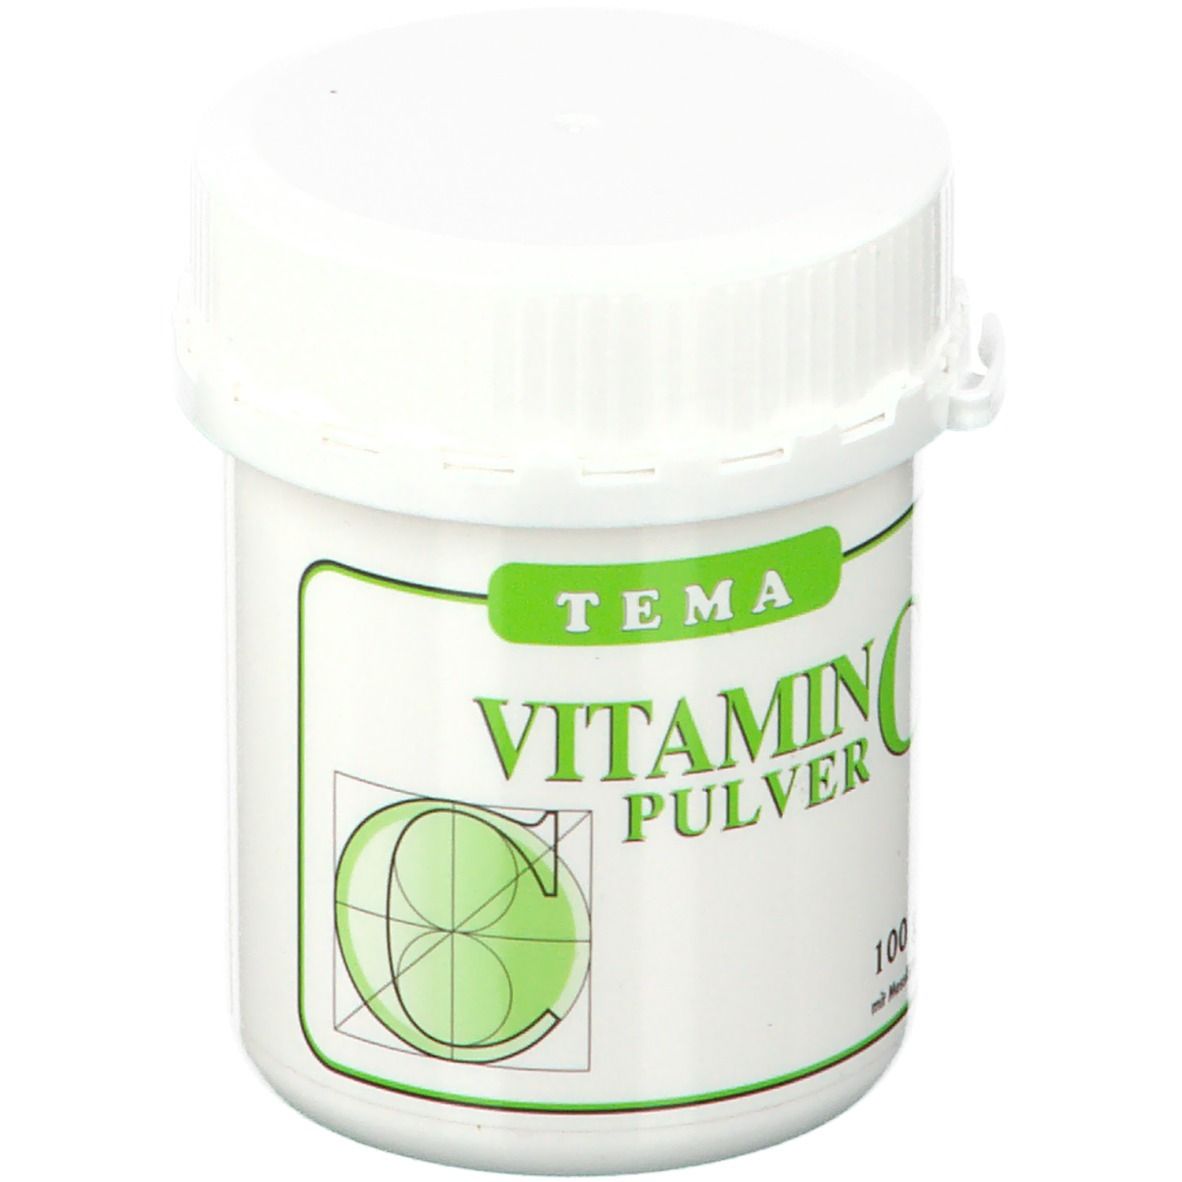 TEMA Vitamin C Pulver